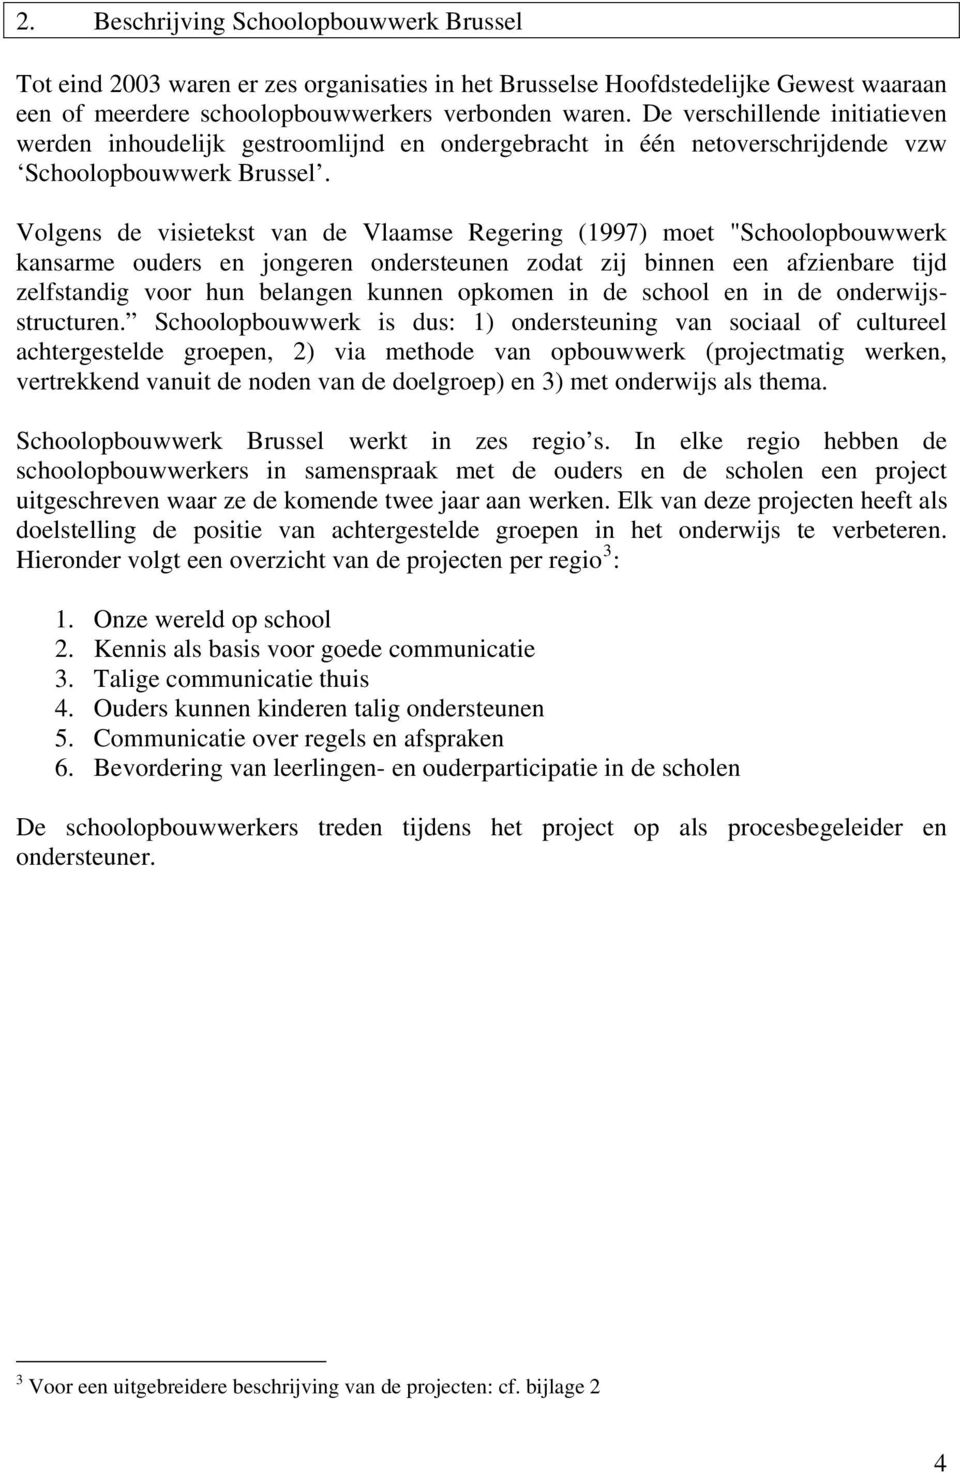 Volgens de visietekst van de Vlaamse Regering (1997) moet "Schoolopbouwwerk kansarme ouders en jongeren ondersteunen zodat zij binnen een afzienbare tijd zelfstandig voor hun belangen kunnen opkomen